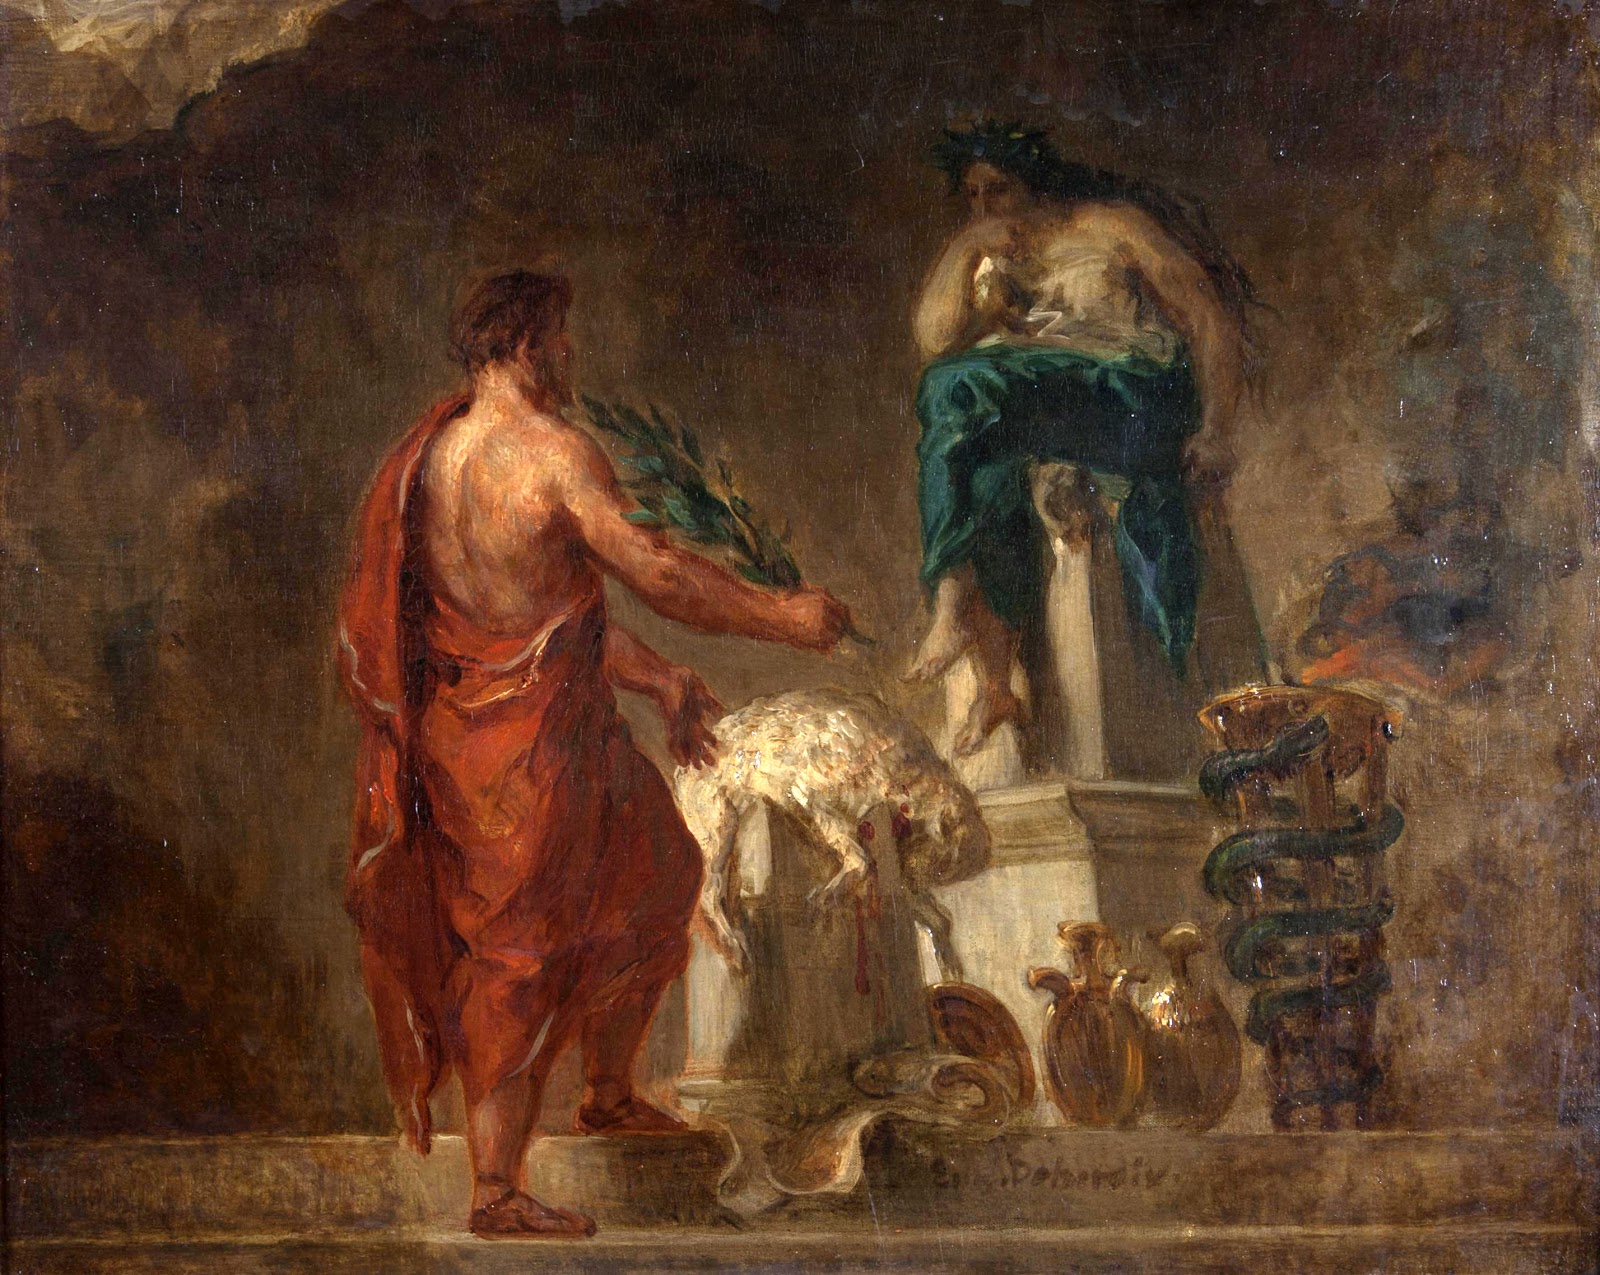 Eugene+Delacroix-1798-1863 (169).jpg